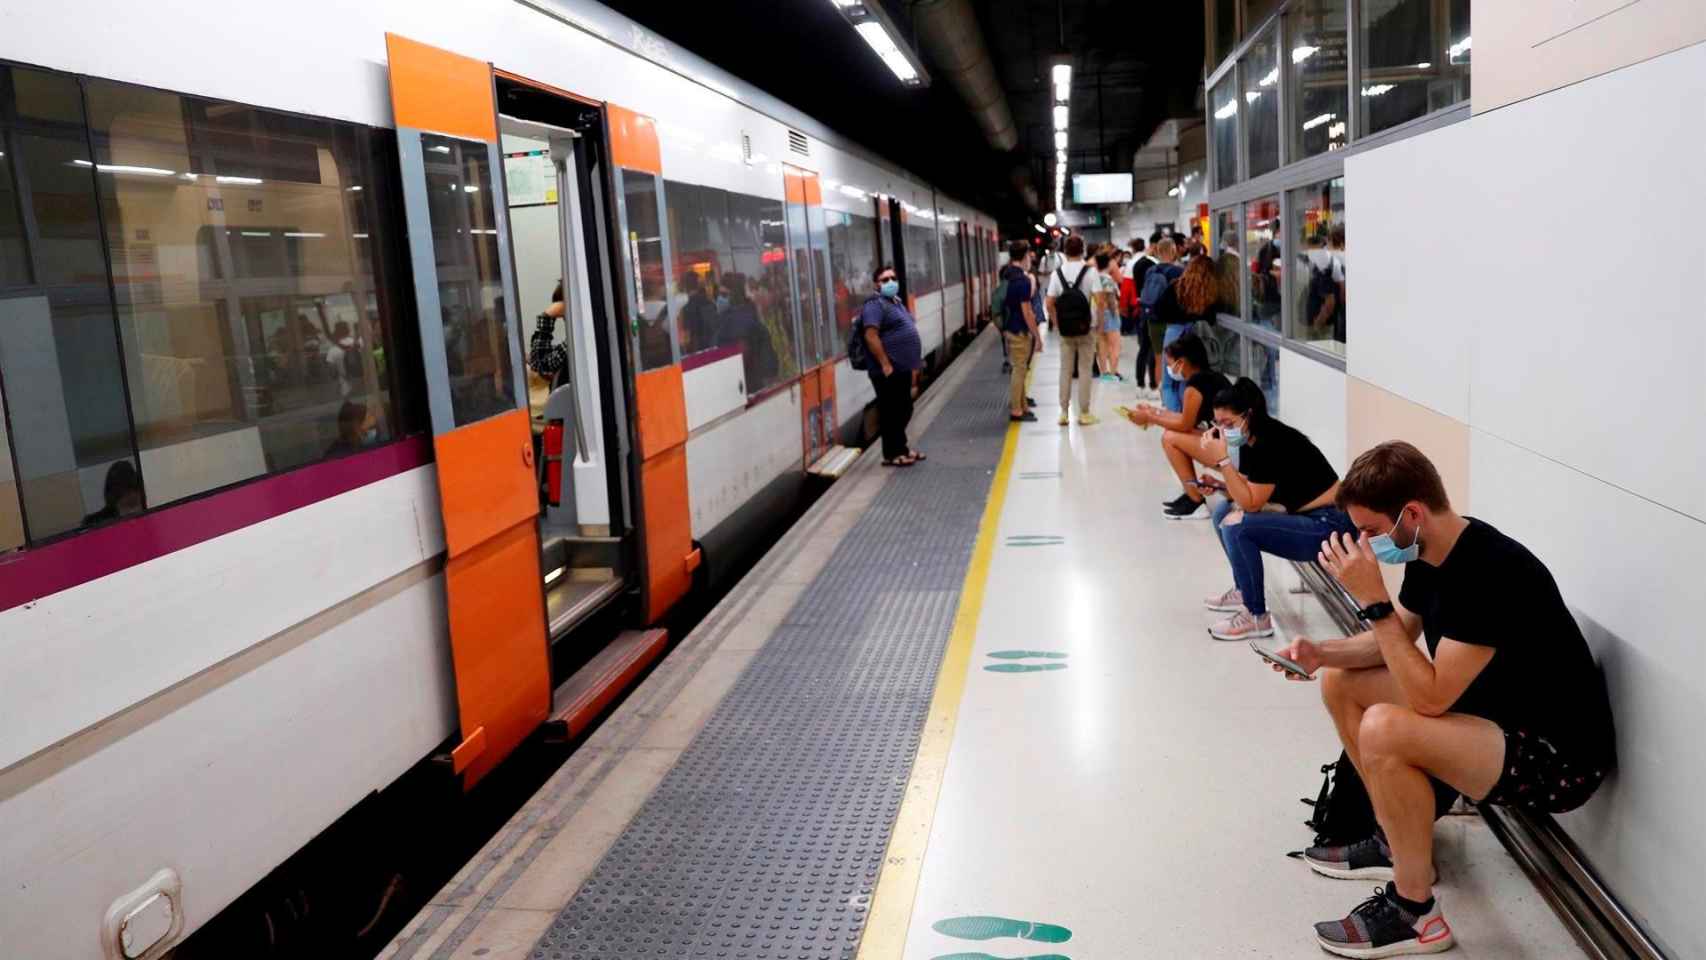 Varios pasajeros esperan ante un tren parado durante la huelga de maquinistas de Renfe en un andén de la estación de Barcelona-Sants / ALEJANDRO GARCÍA - EFE